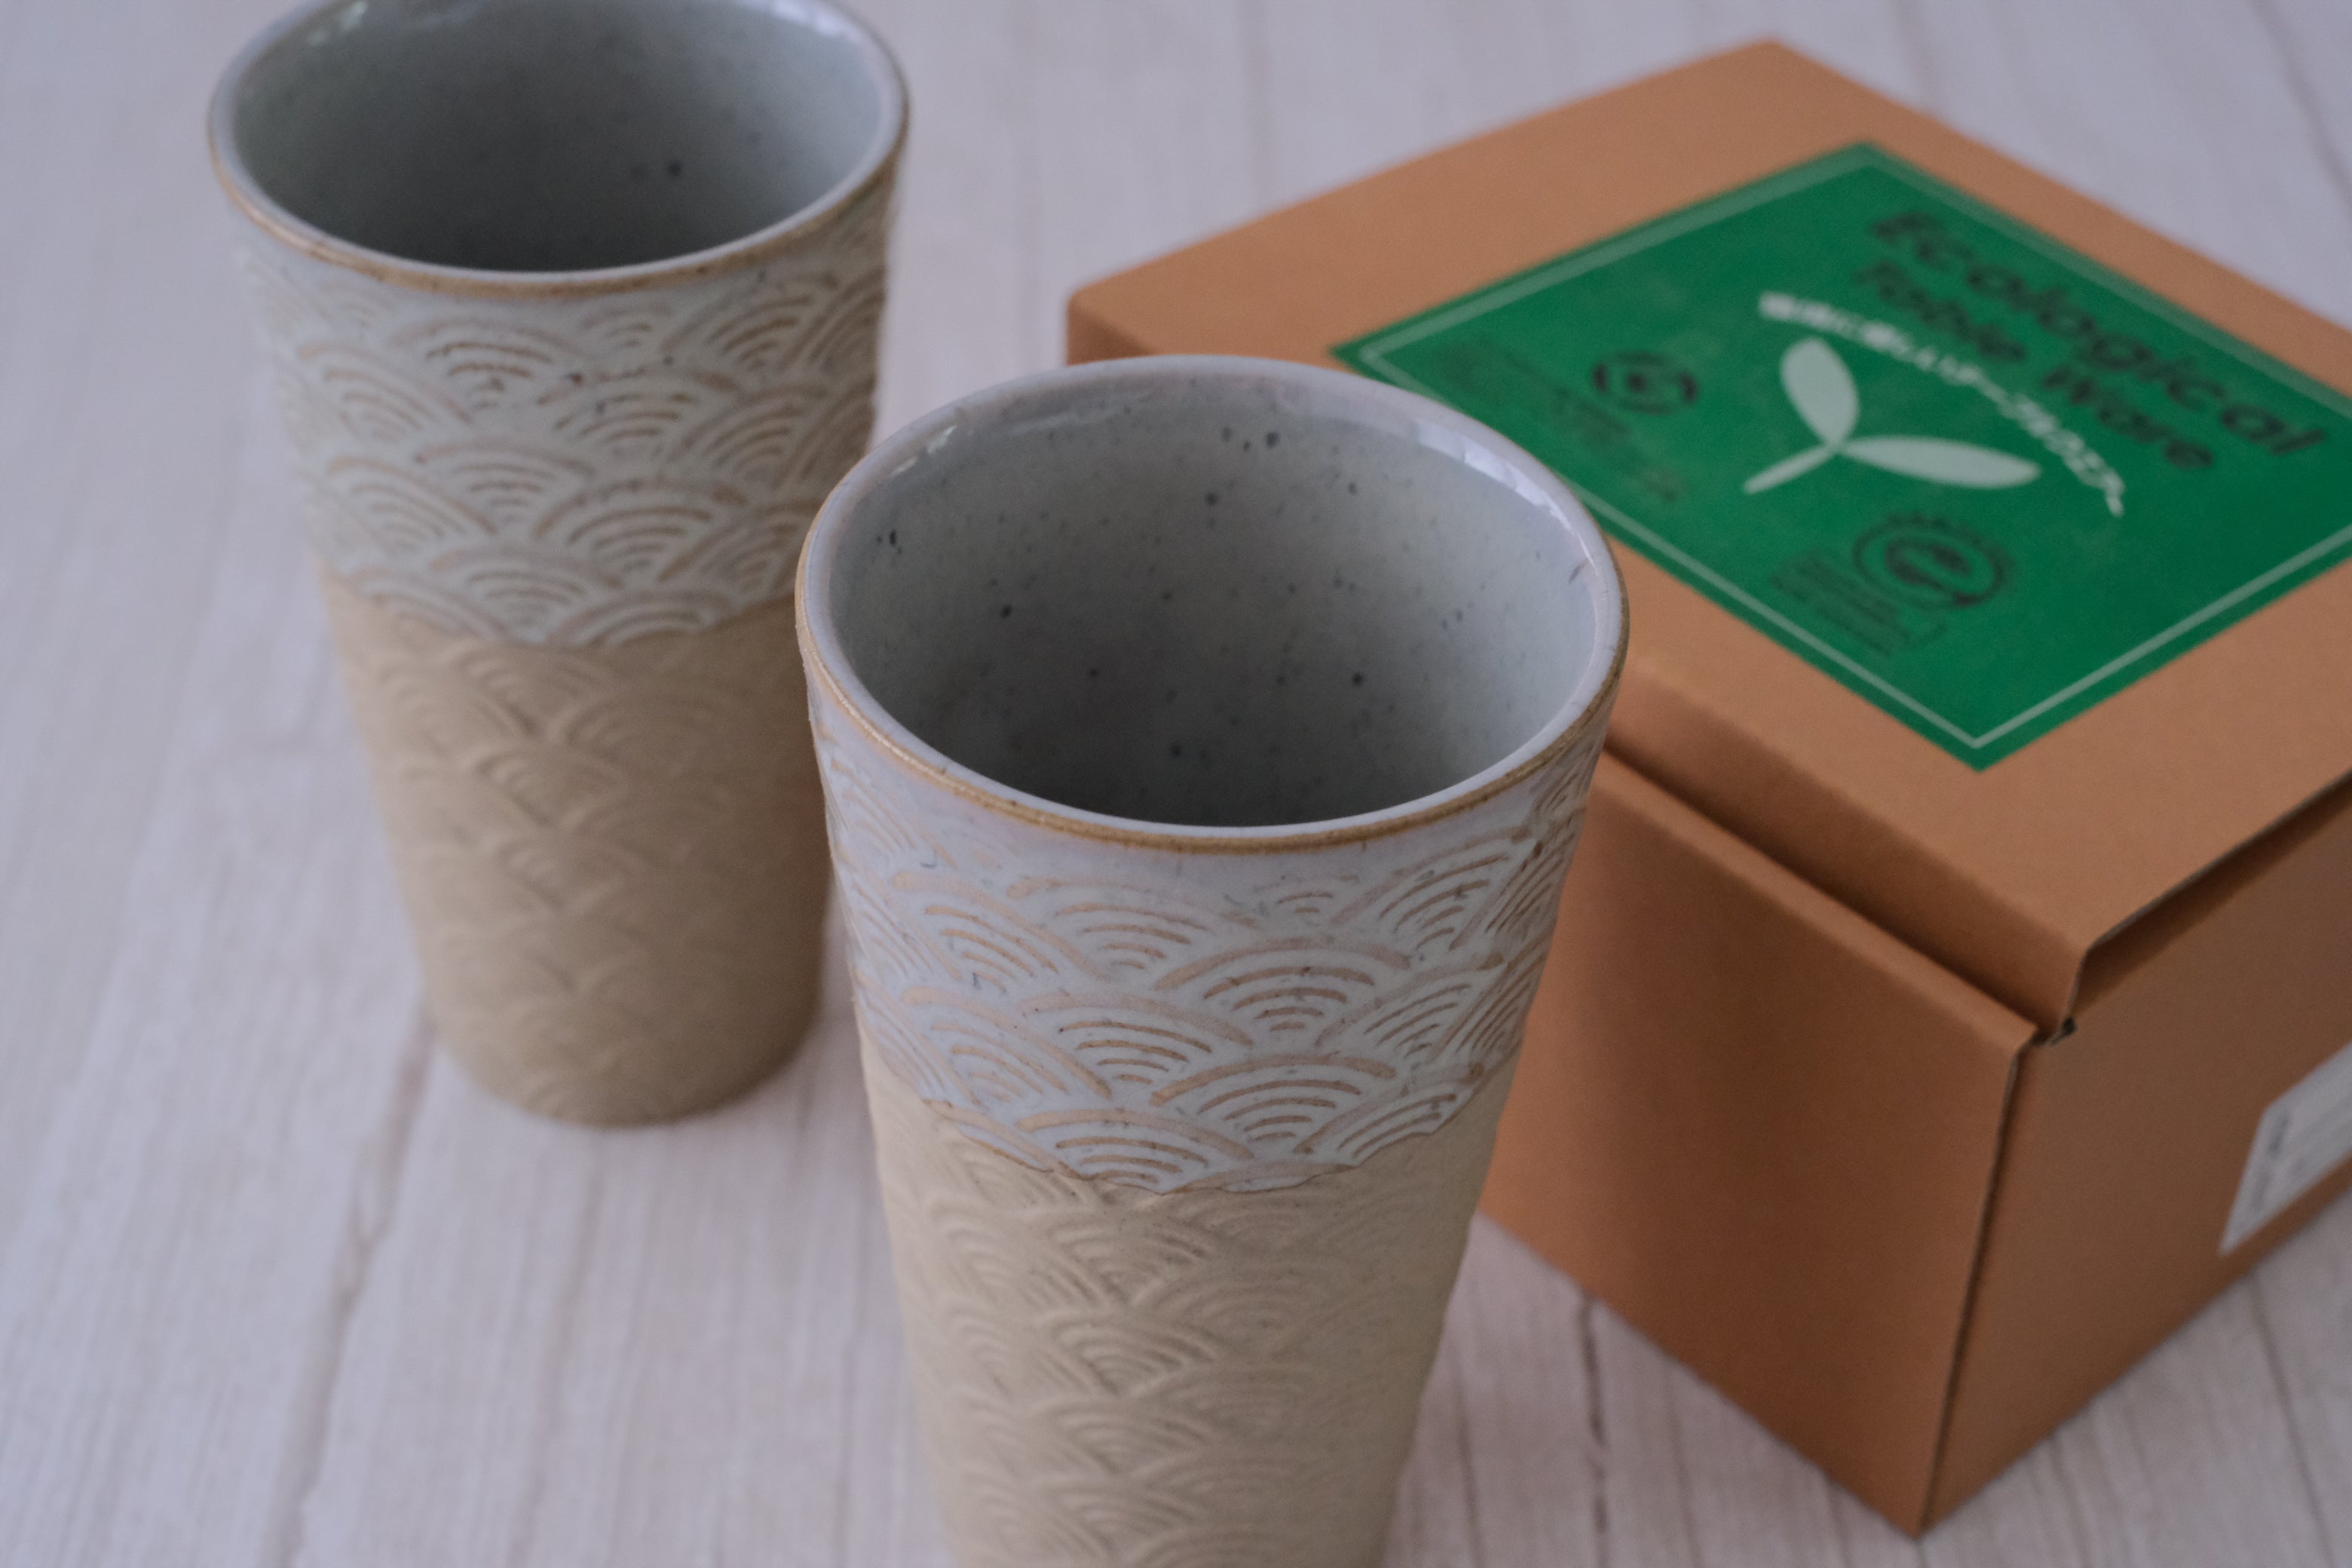 Mashiko Ware Unofu Ecological Pair Tumbler Cups